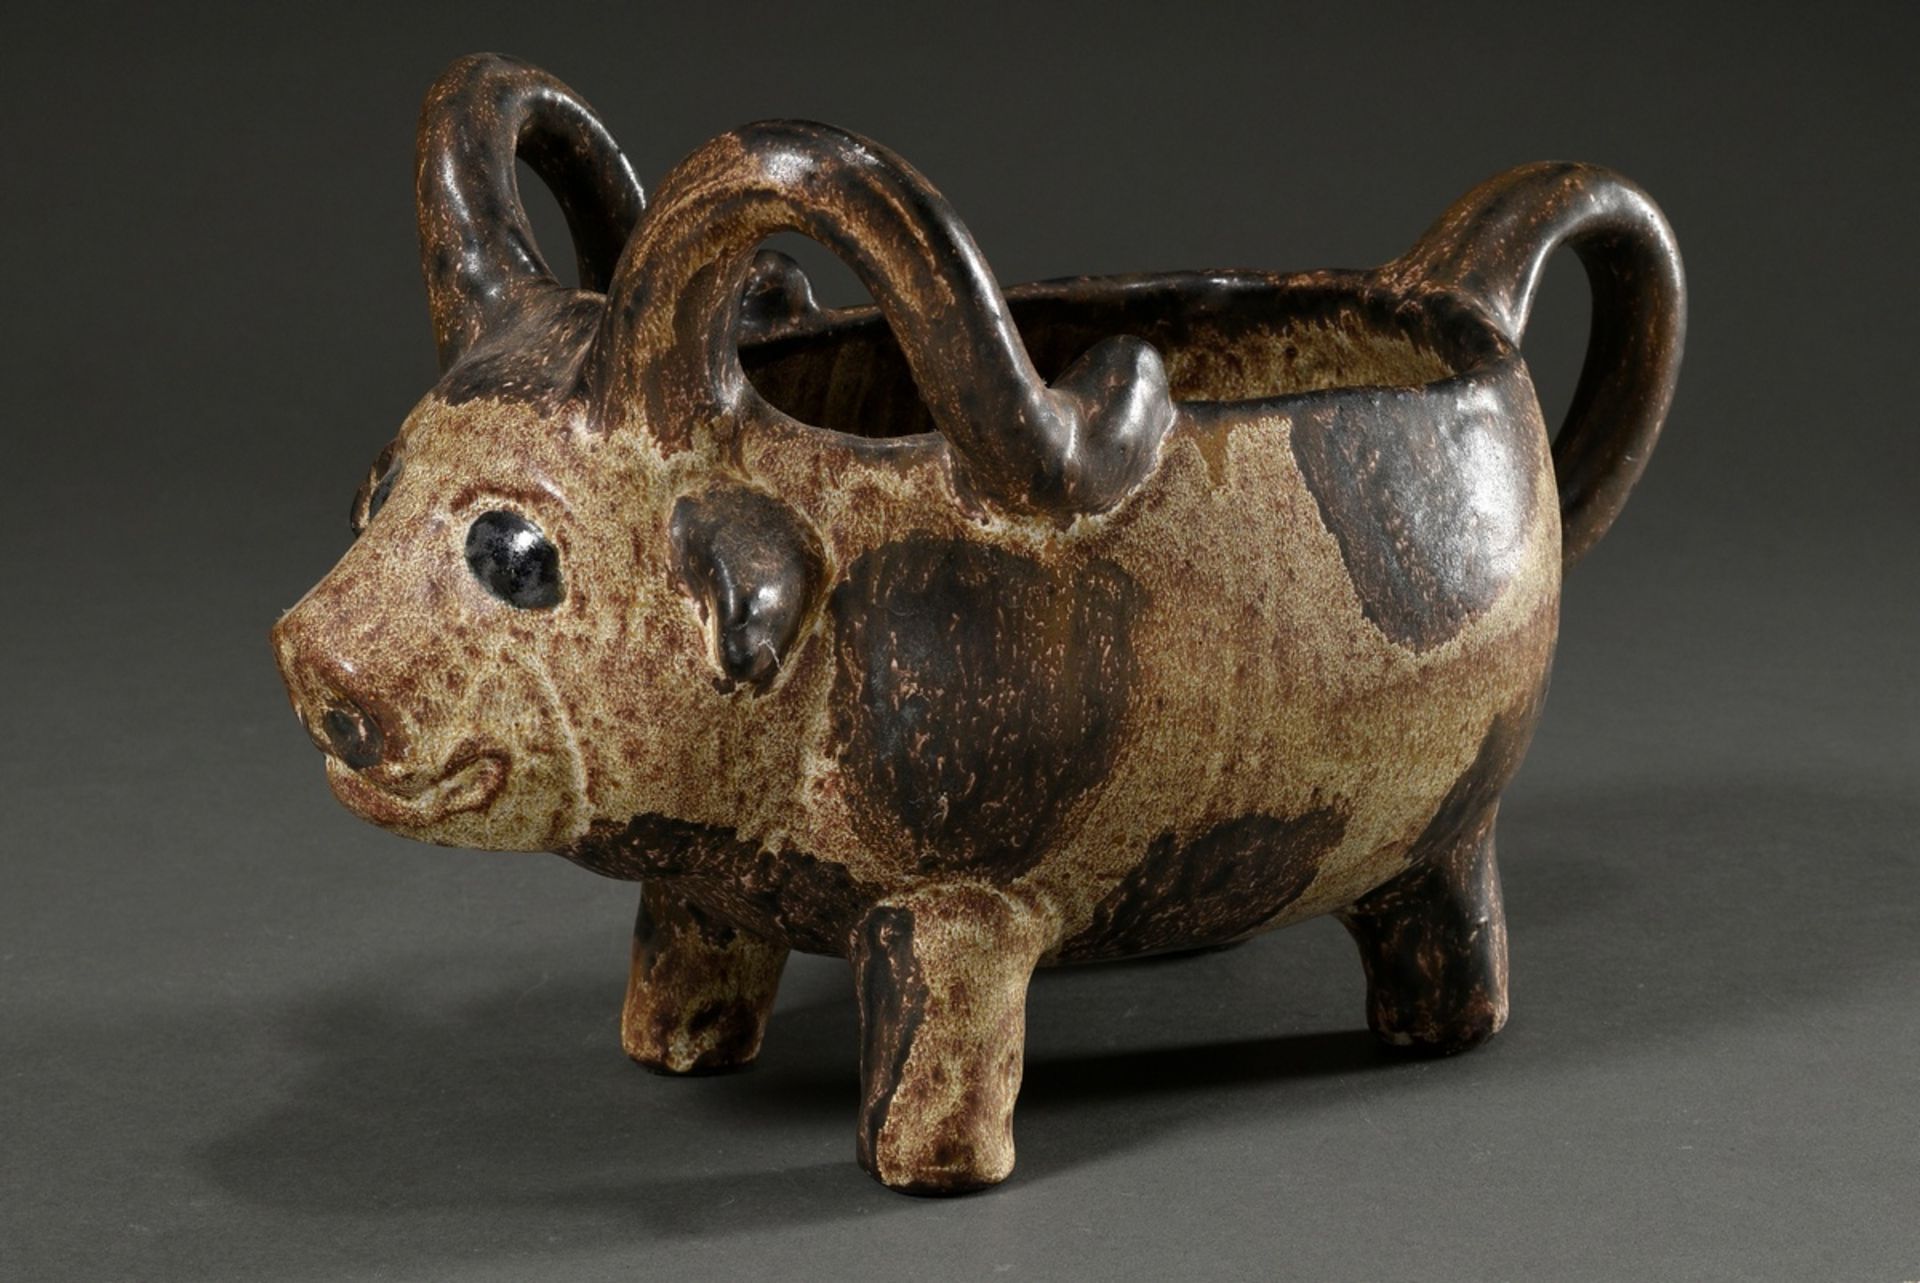 Maetzel, Monika (1917-2010) studio ceramics vessel in animal form "bull", ceramic white/brown glaze